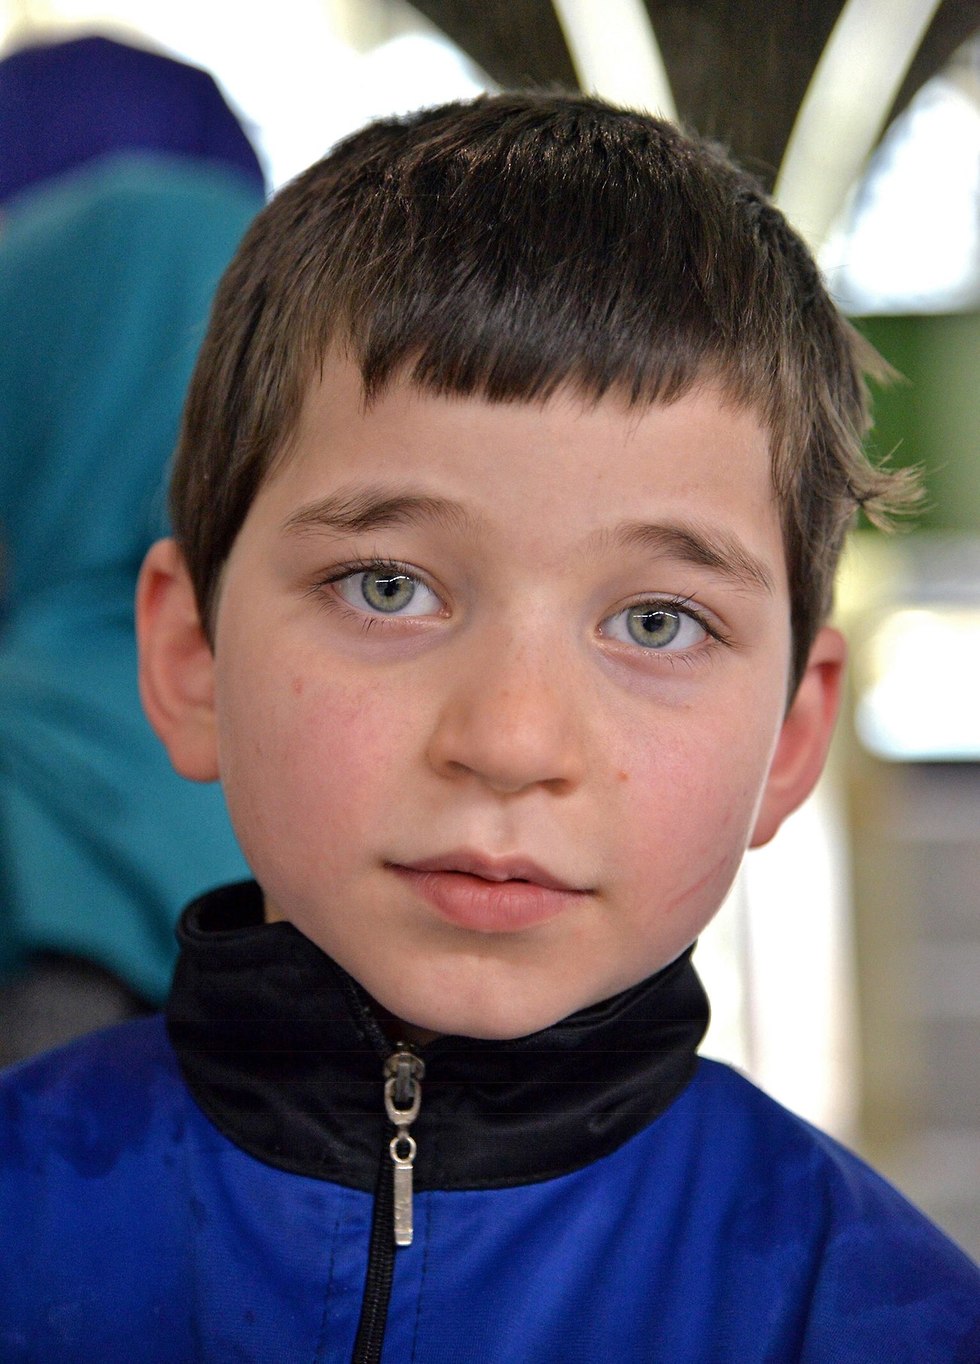 רוסיה החזירה הביתה עשרות ילדים של פעילי דאעש ב עיראק (צילום: EPA)